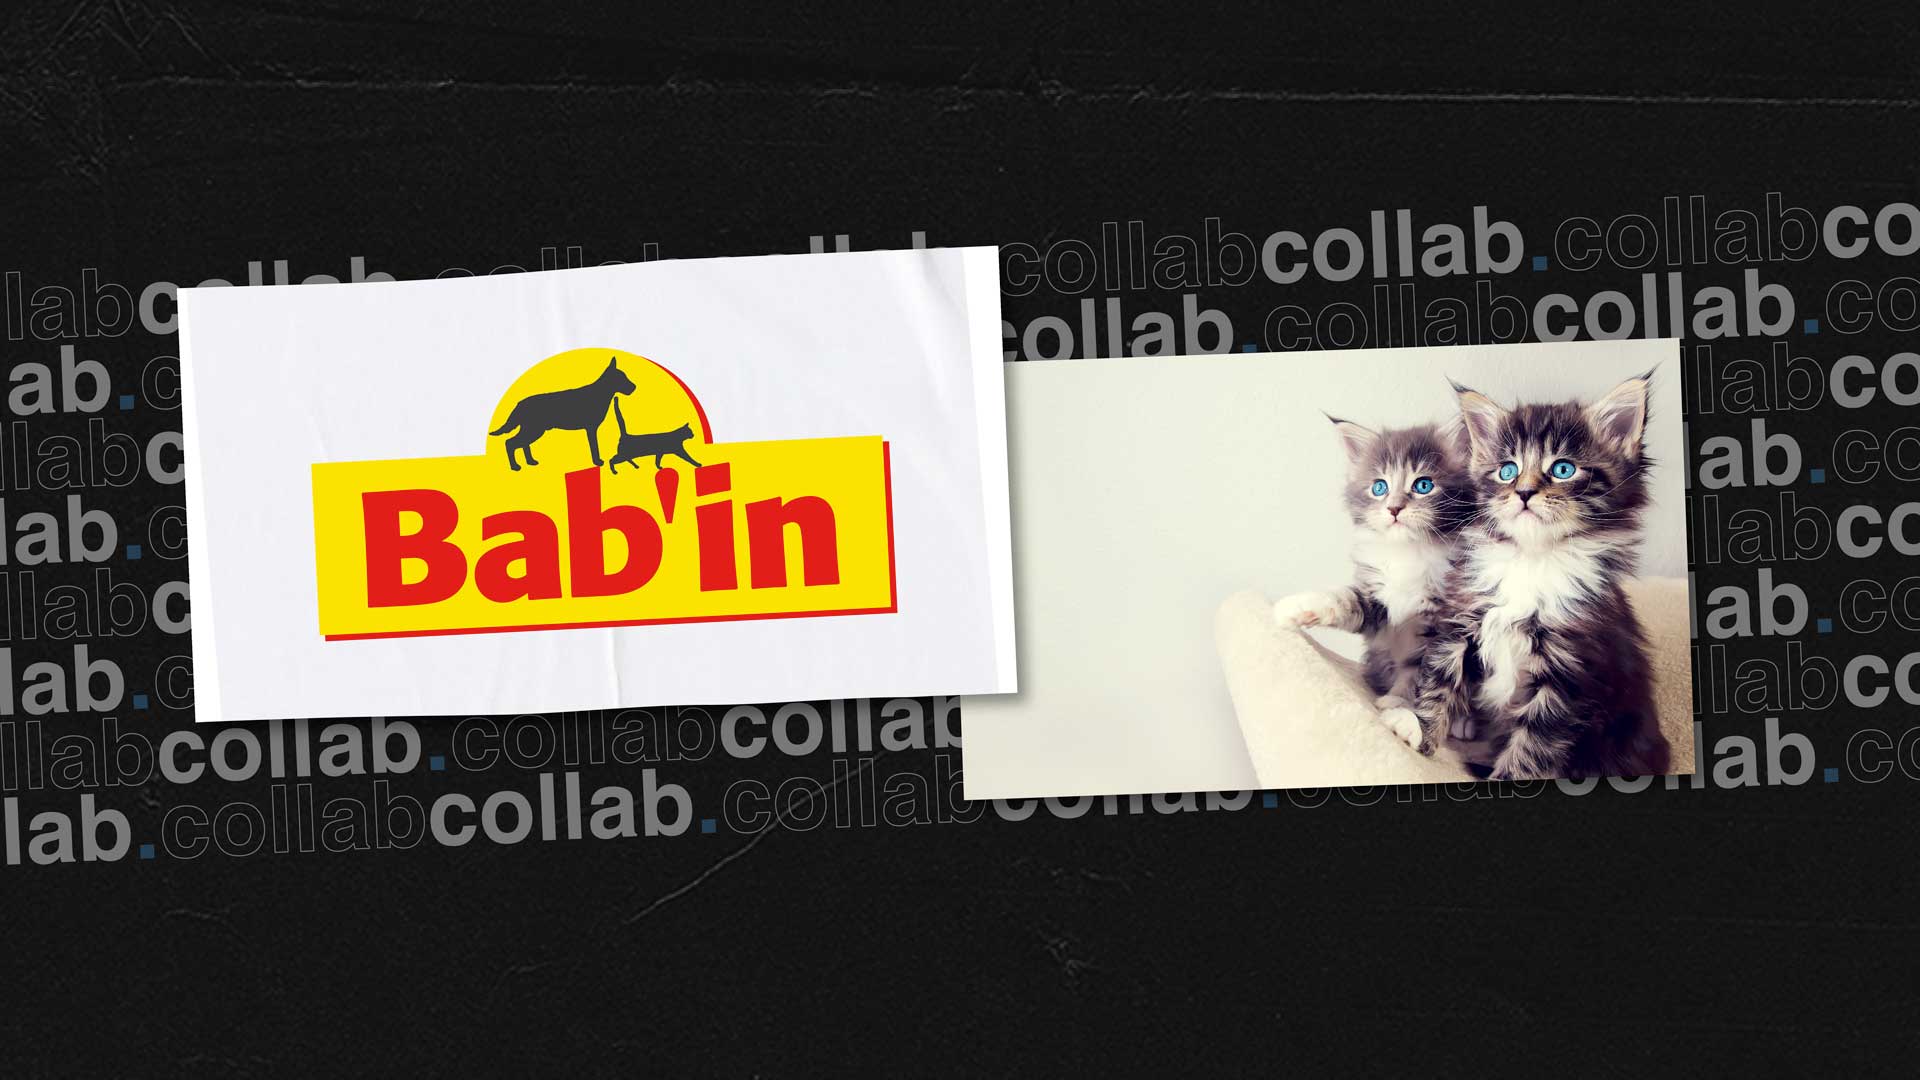 collaboration babin